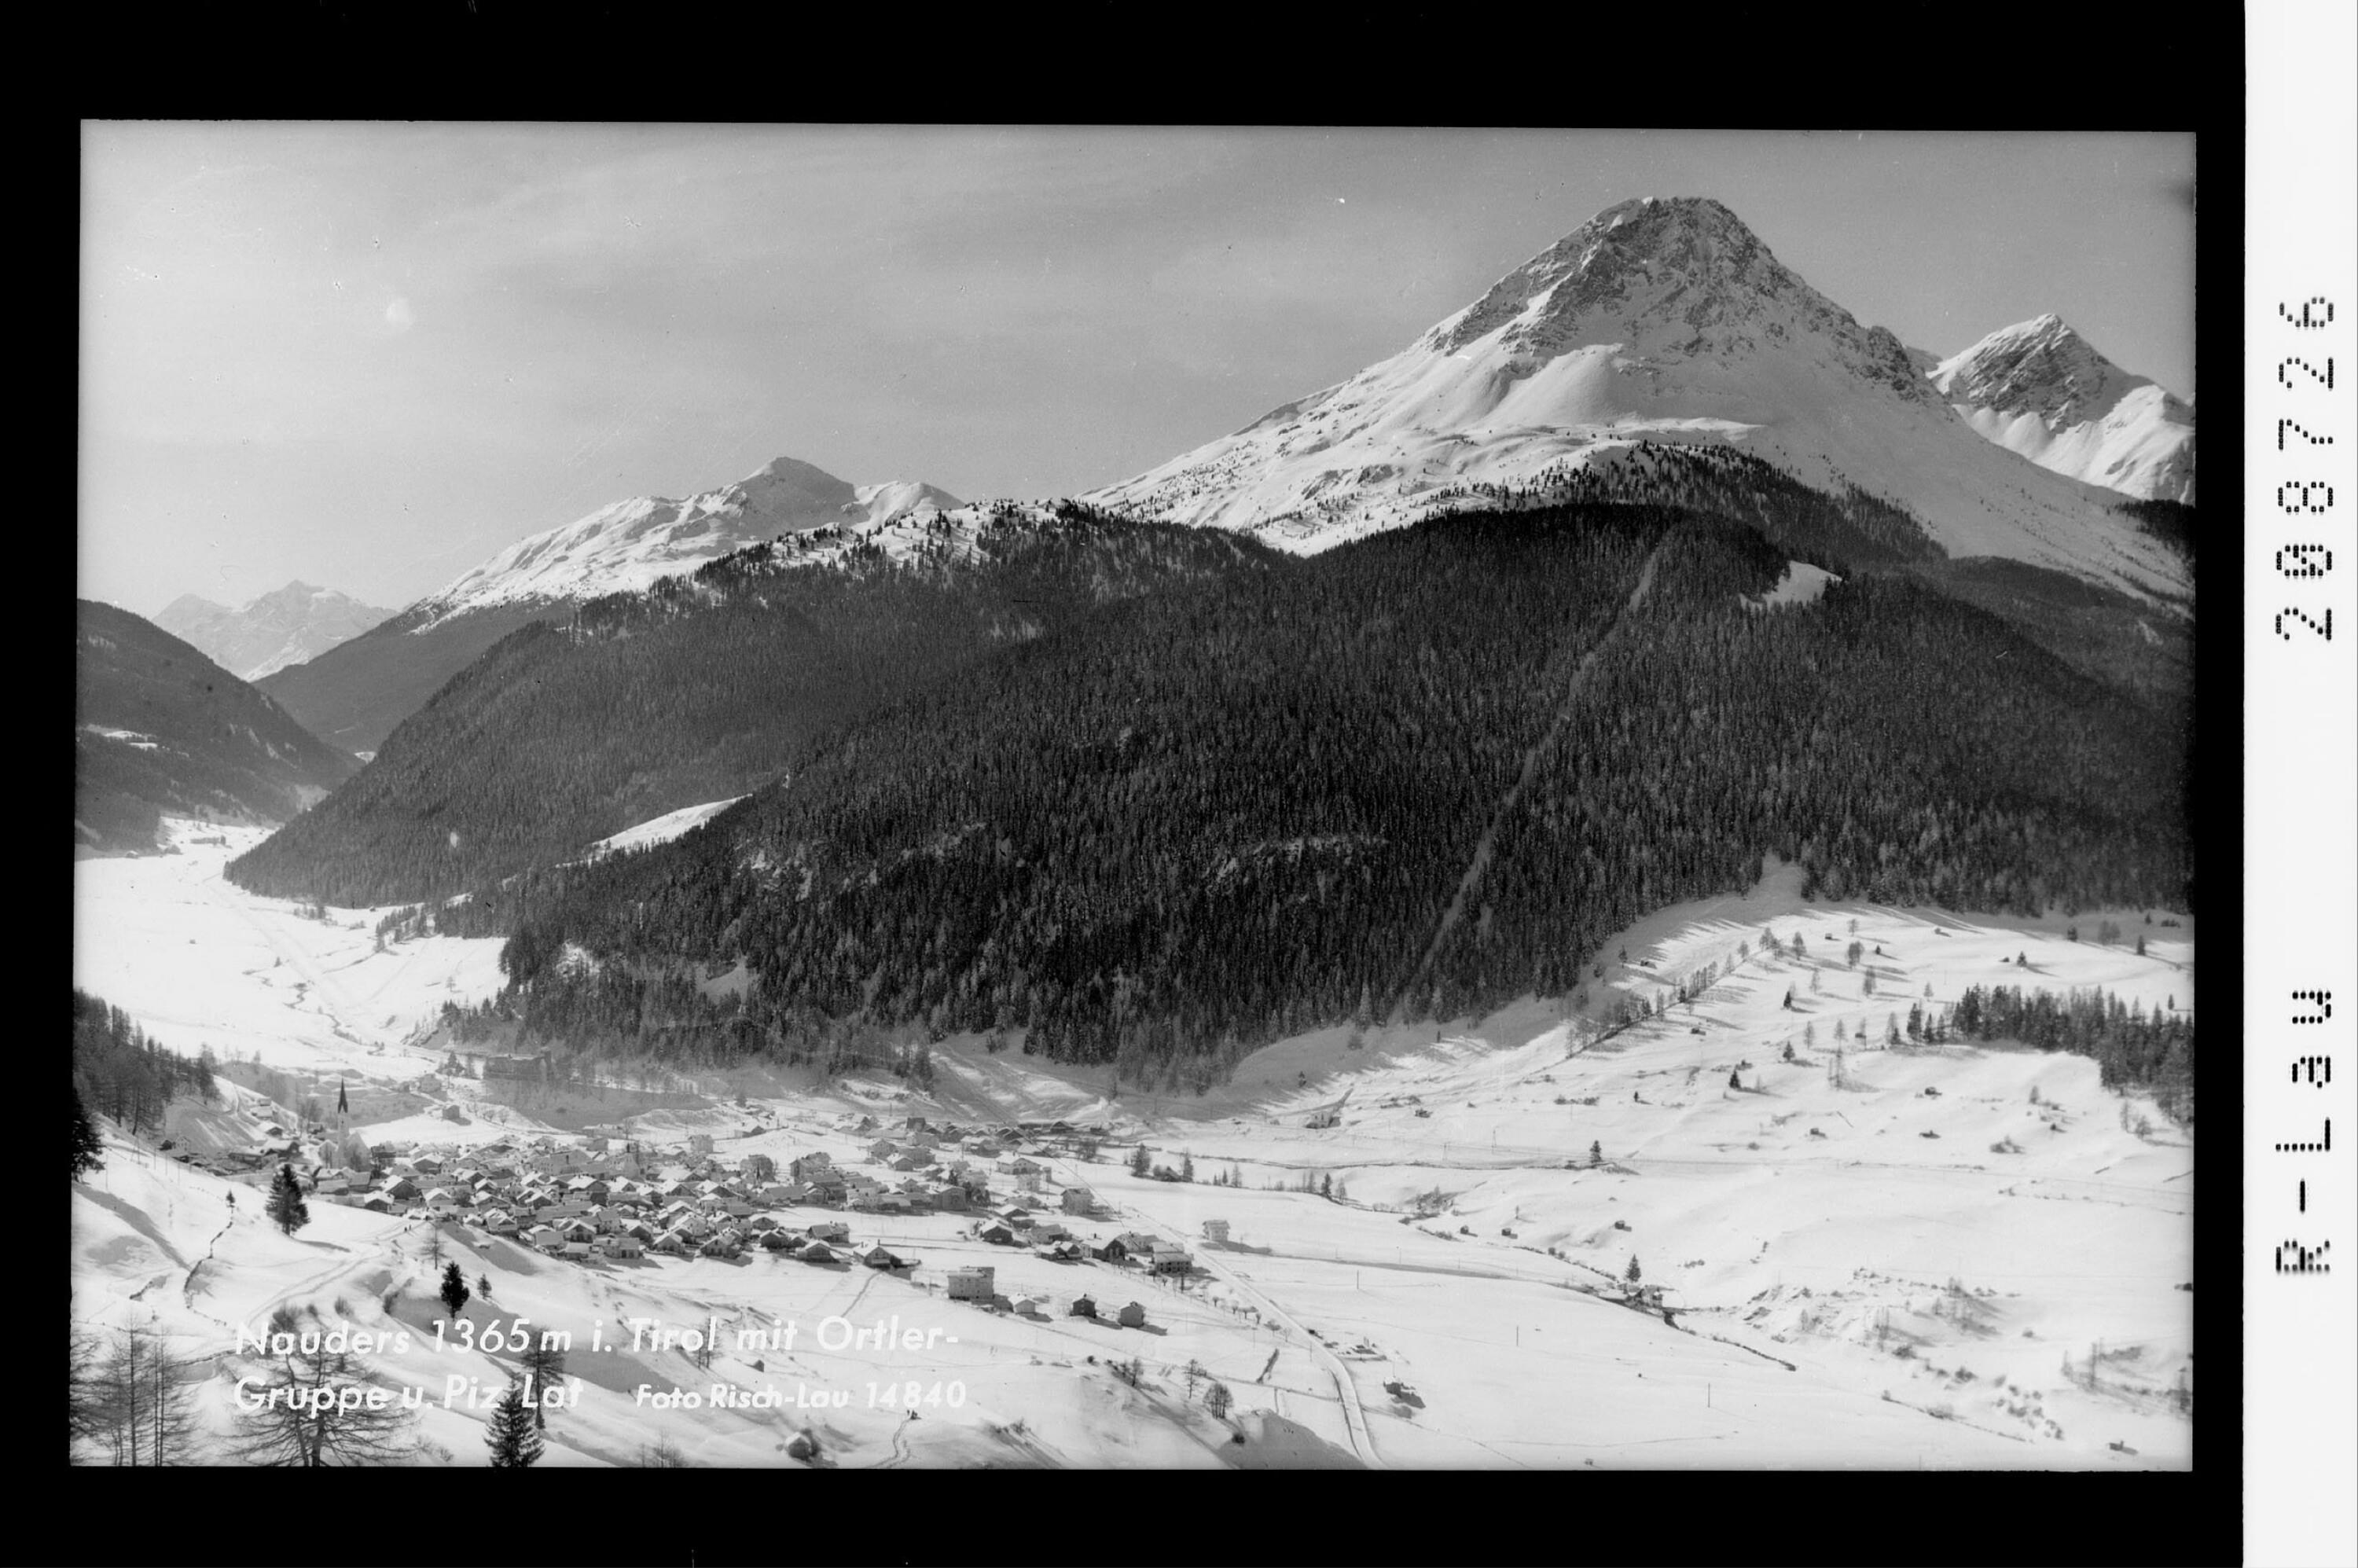 Nauders 1365 m in Tirol mit Ortlergruppe und Piz Lat></div>


    <hr>
    <div class=